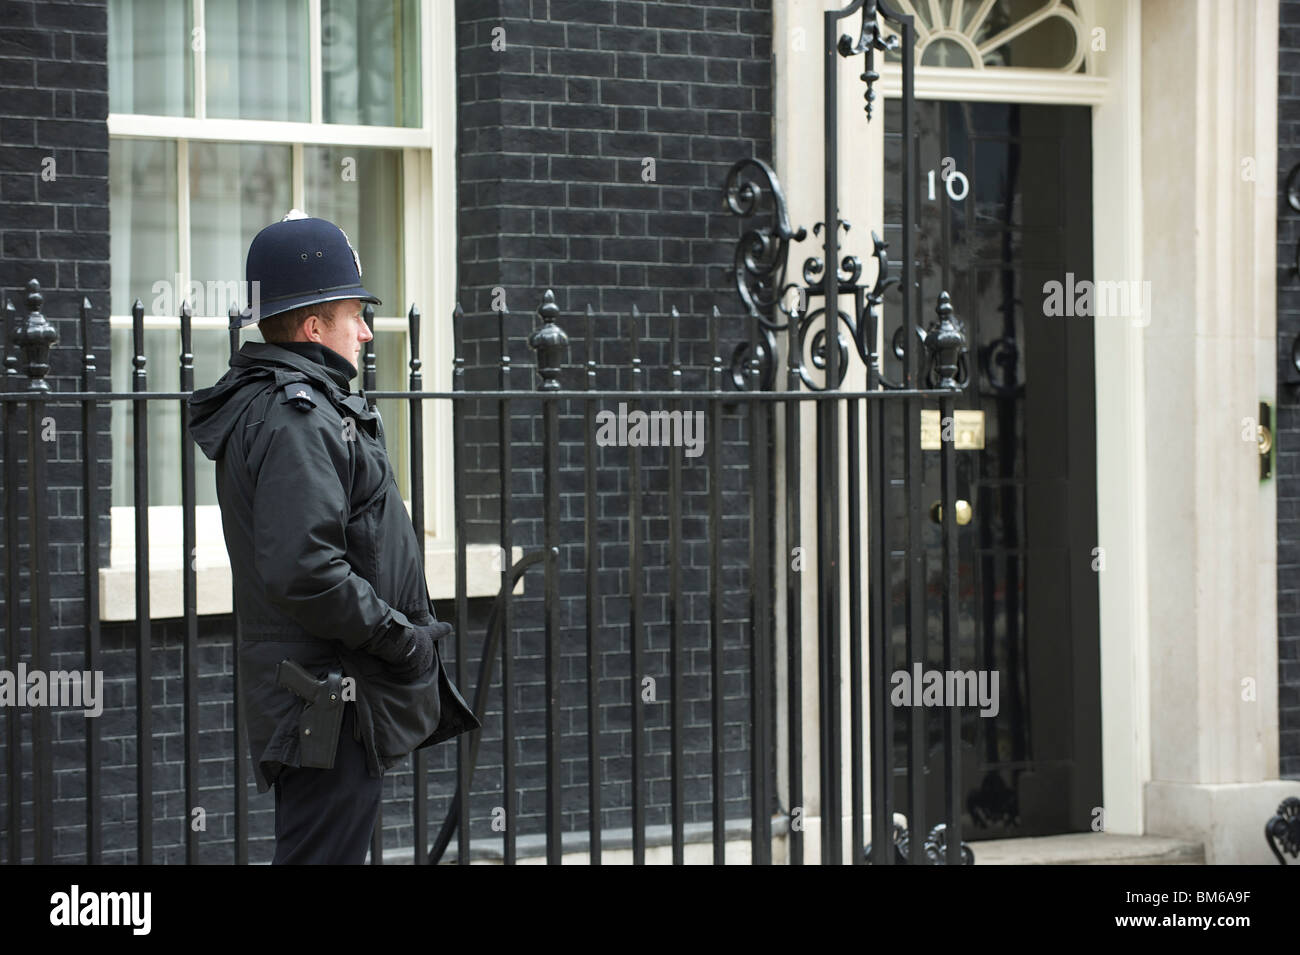 10 Downing Street, London. Die offizielle Residenz des britischen Premierministers, hier mit einem Polizist oder "Bobby" außerhalb. Stockfoto